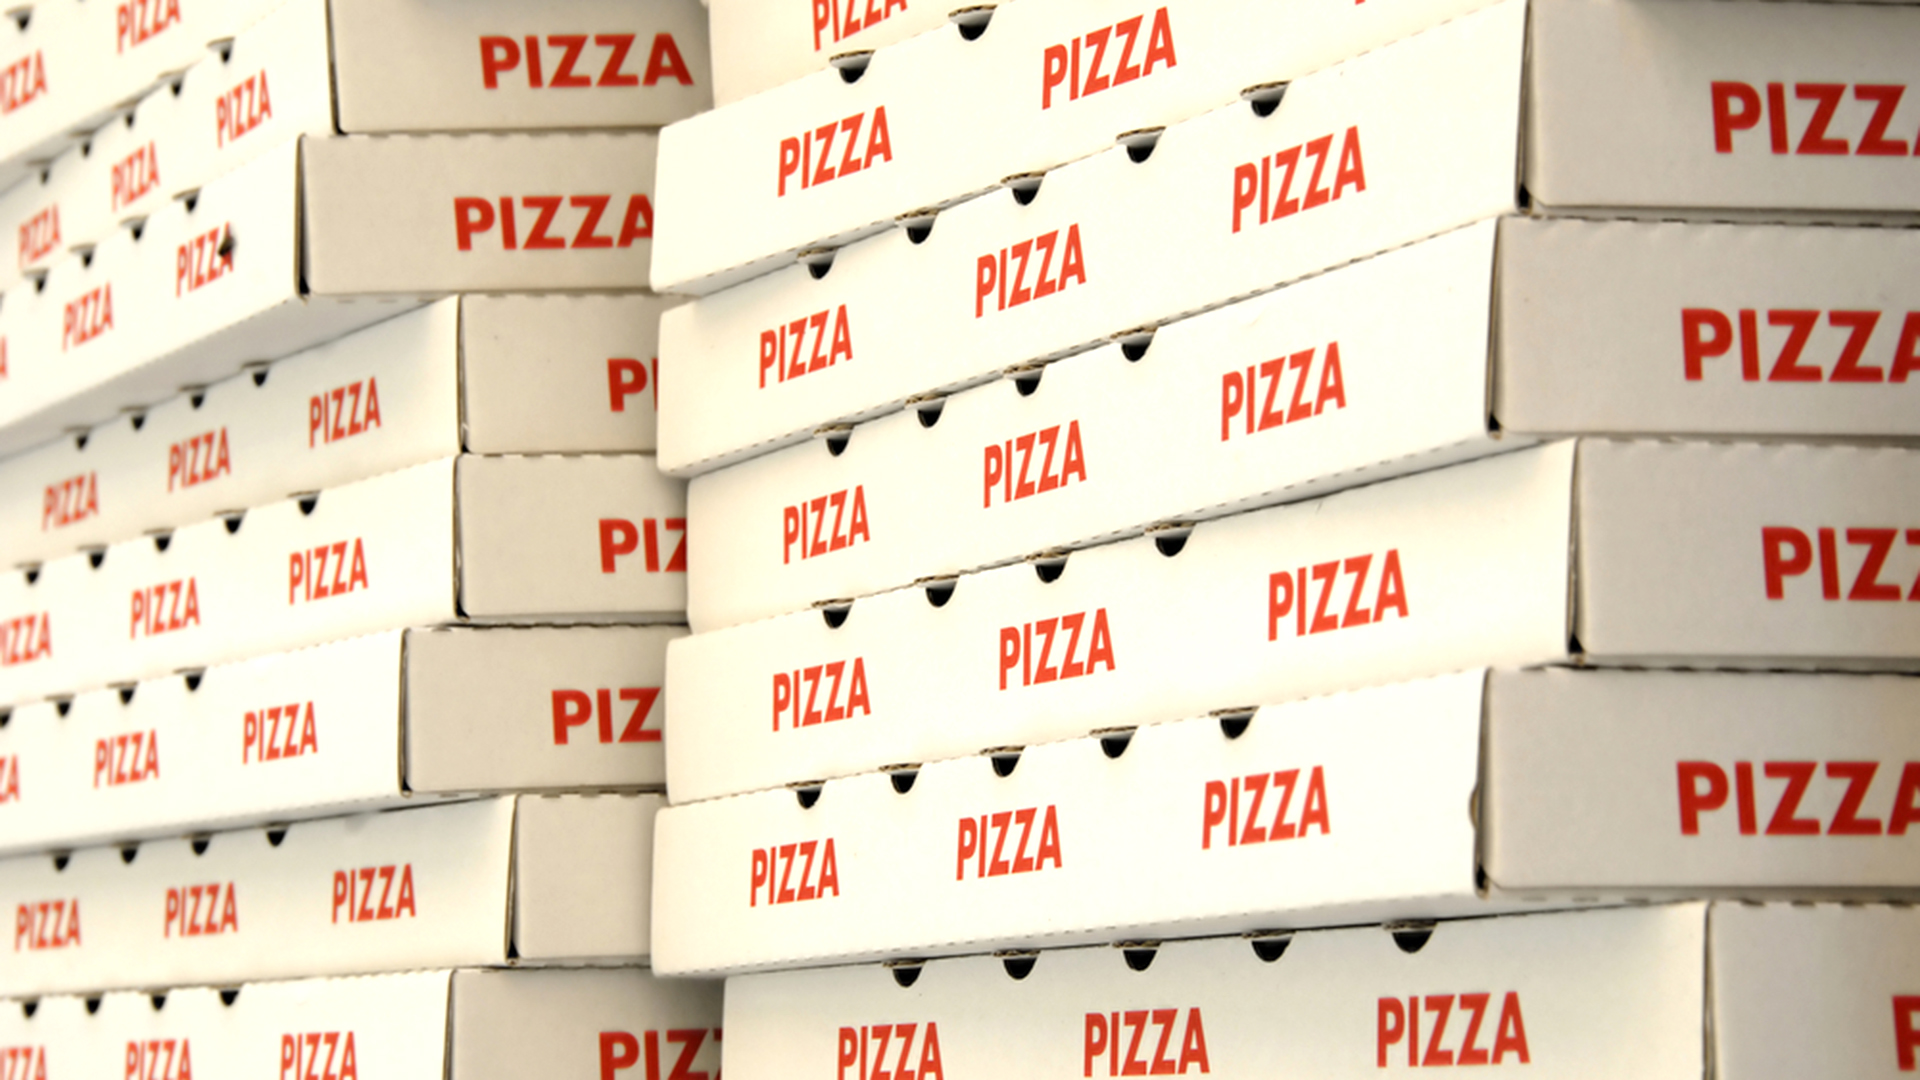 pizza-boxes-stock-today-150501-tz_892a9bac24ec09644ce4dbc2e08b512f